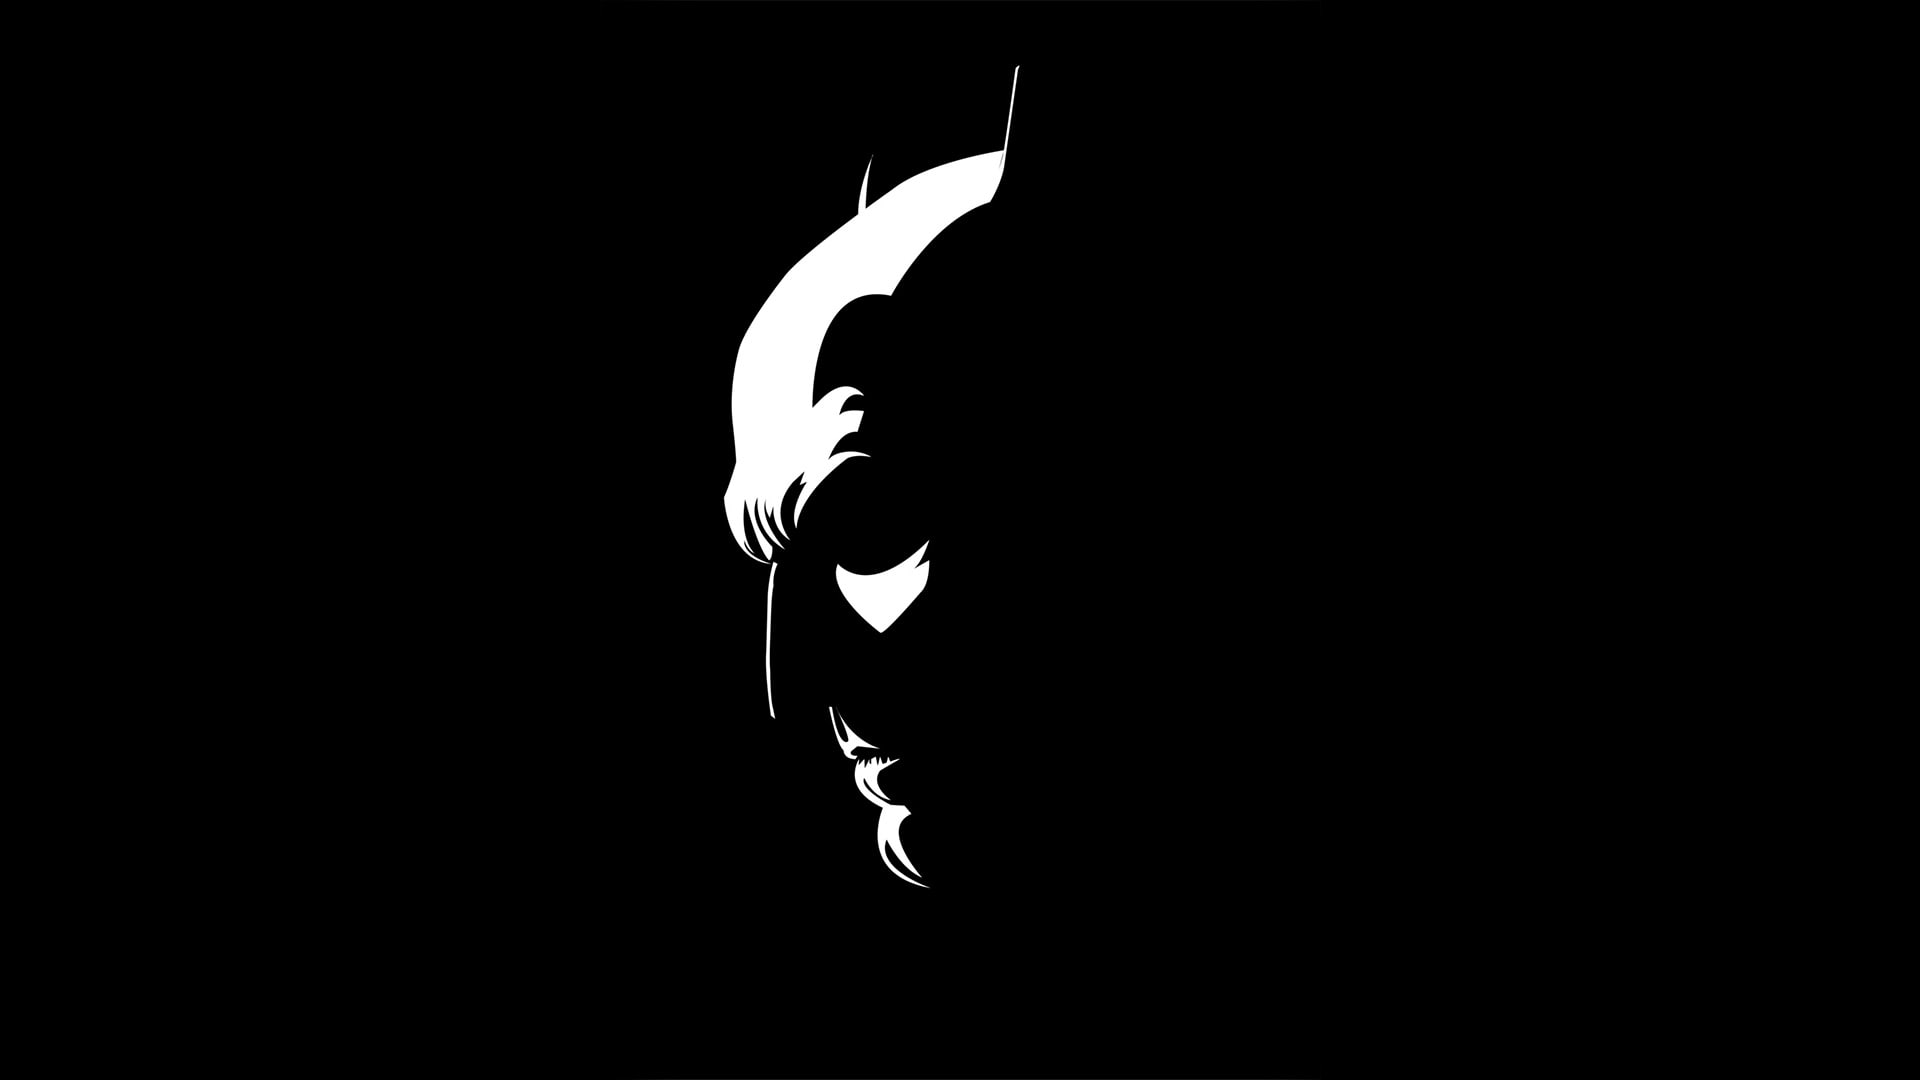 Free download | HD wallpaper: batman, black and white, monochrome, hd